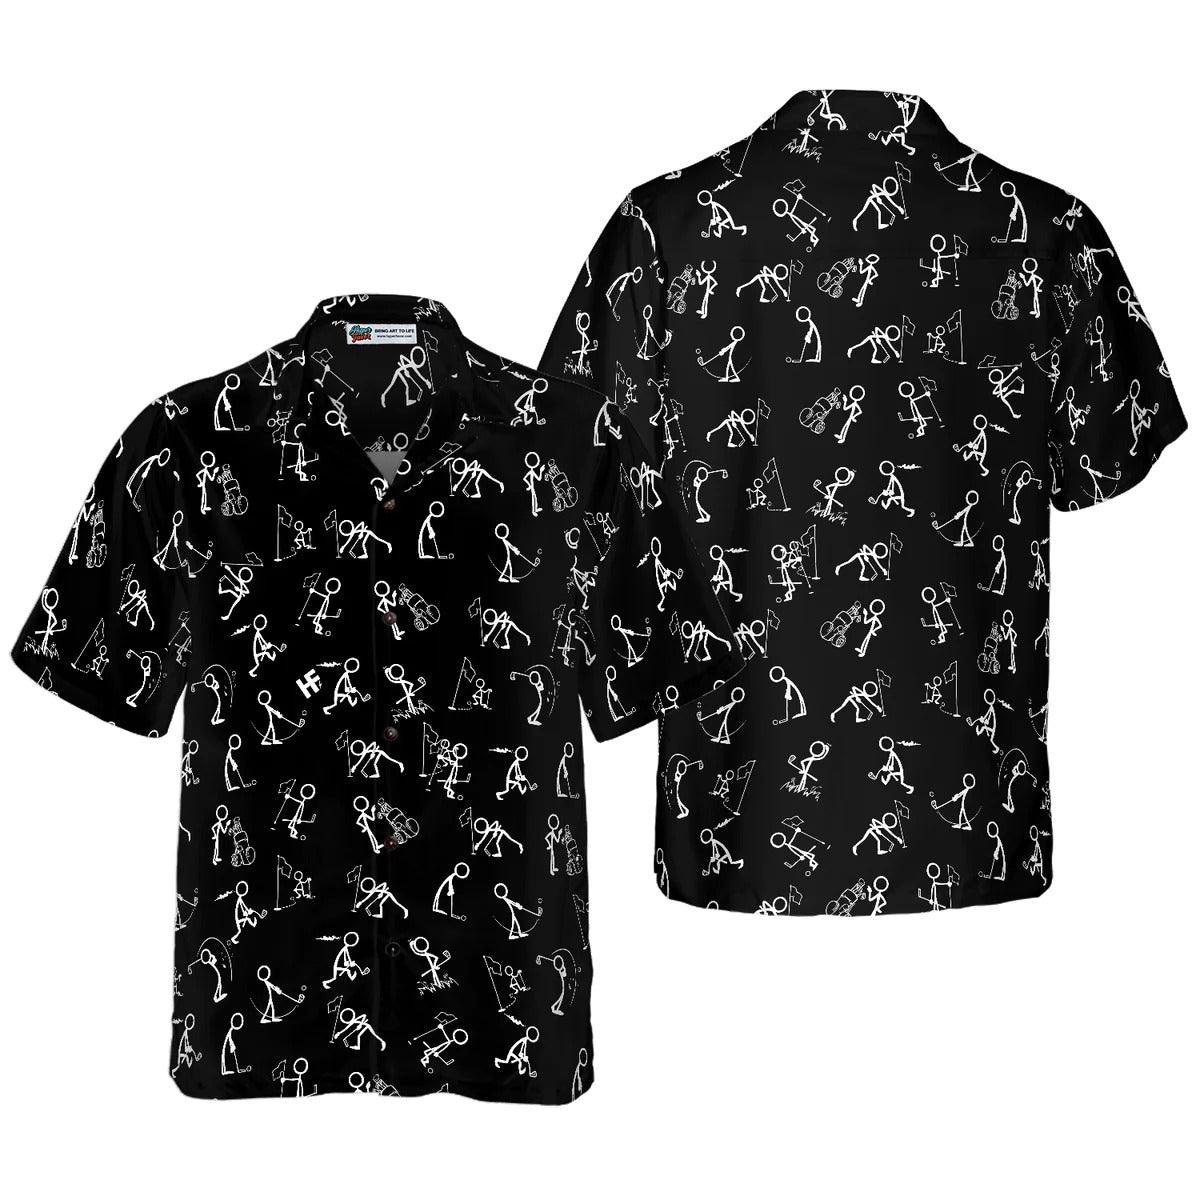 Golf Hawaiian Shirt, Golf Aloha Shirt, Stickfigures Playing Golf On Black Background Hawaii Shirt For Summer - Perfect Gift For Men, Women, Golf Lover - Amzanimalsgift